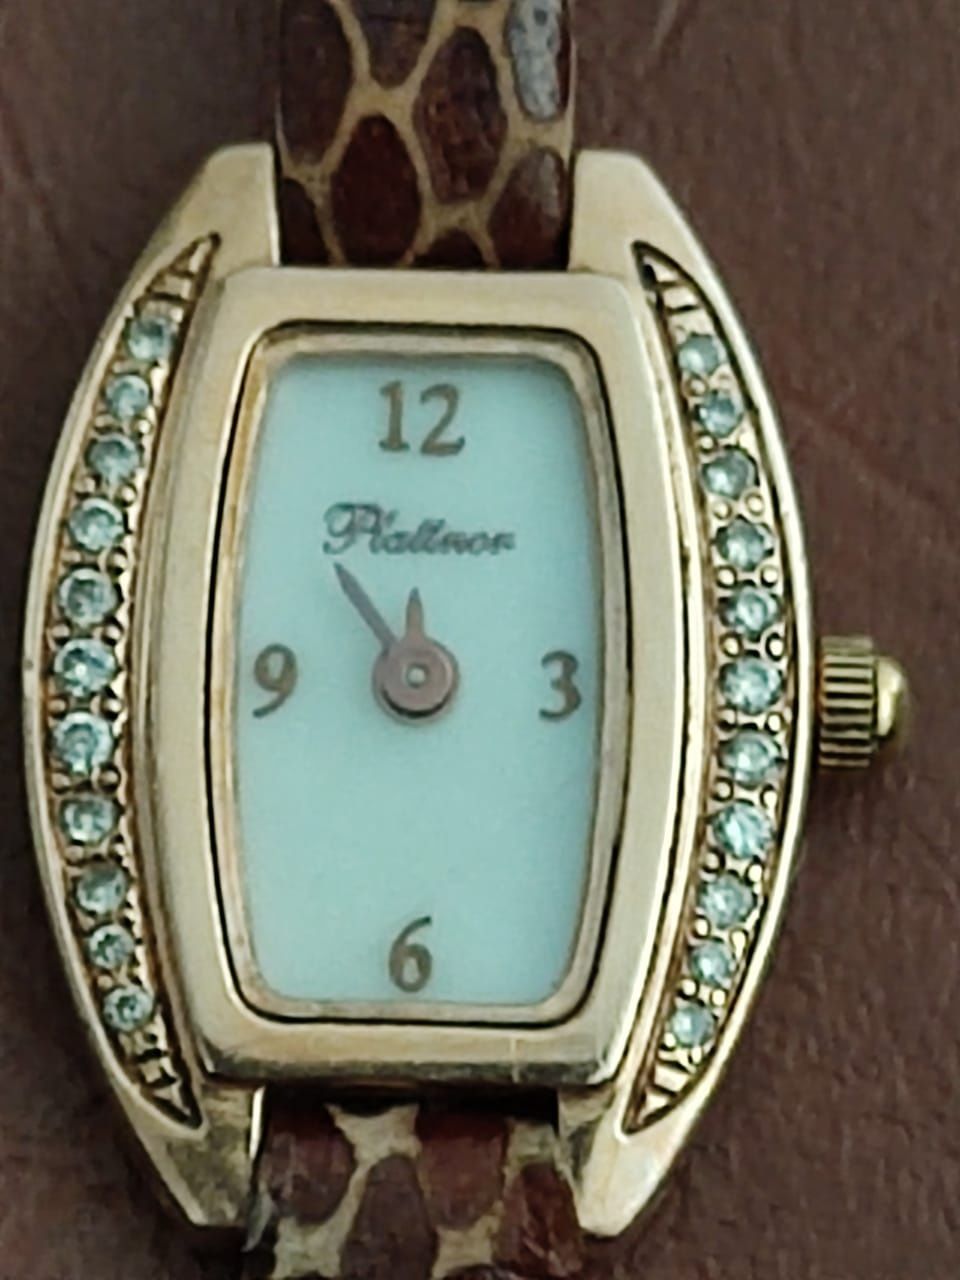 Золотые часы с бриллиантами Platinor